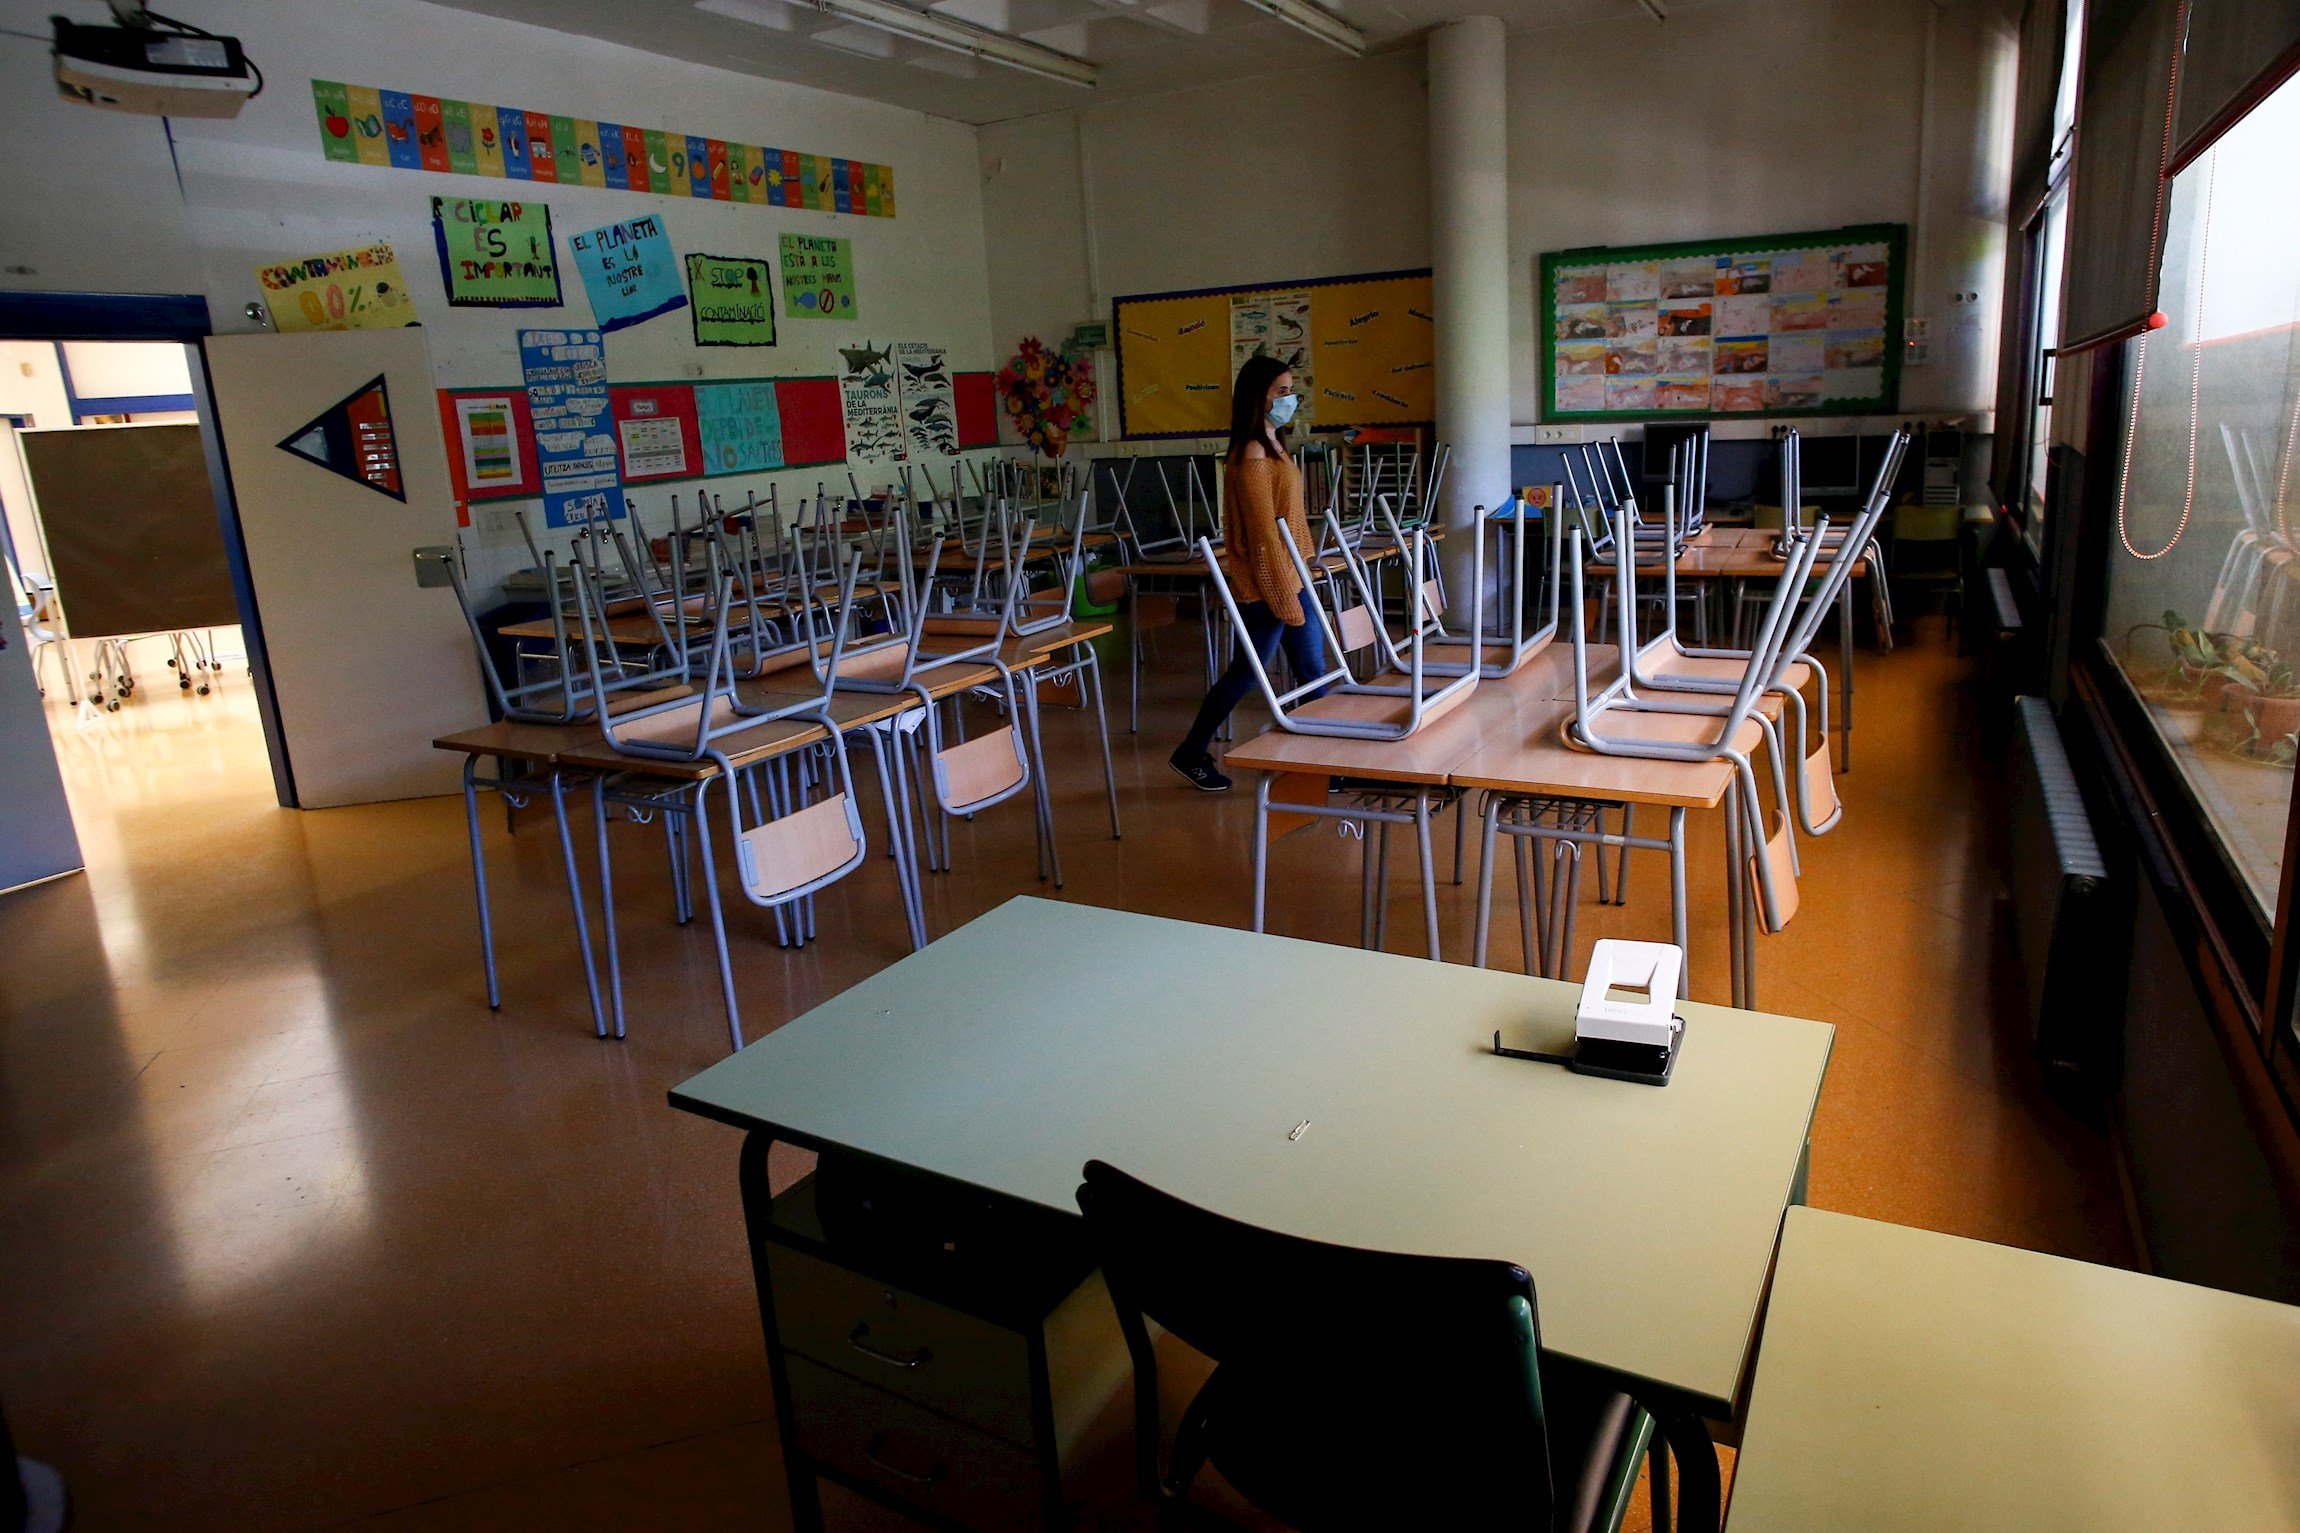 Sindicats carreguen contra Educació per voler obrir escoles: "És una temeritat"